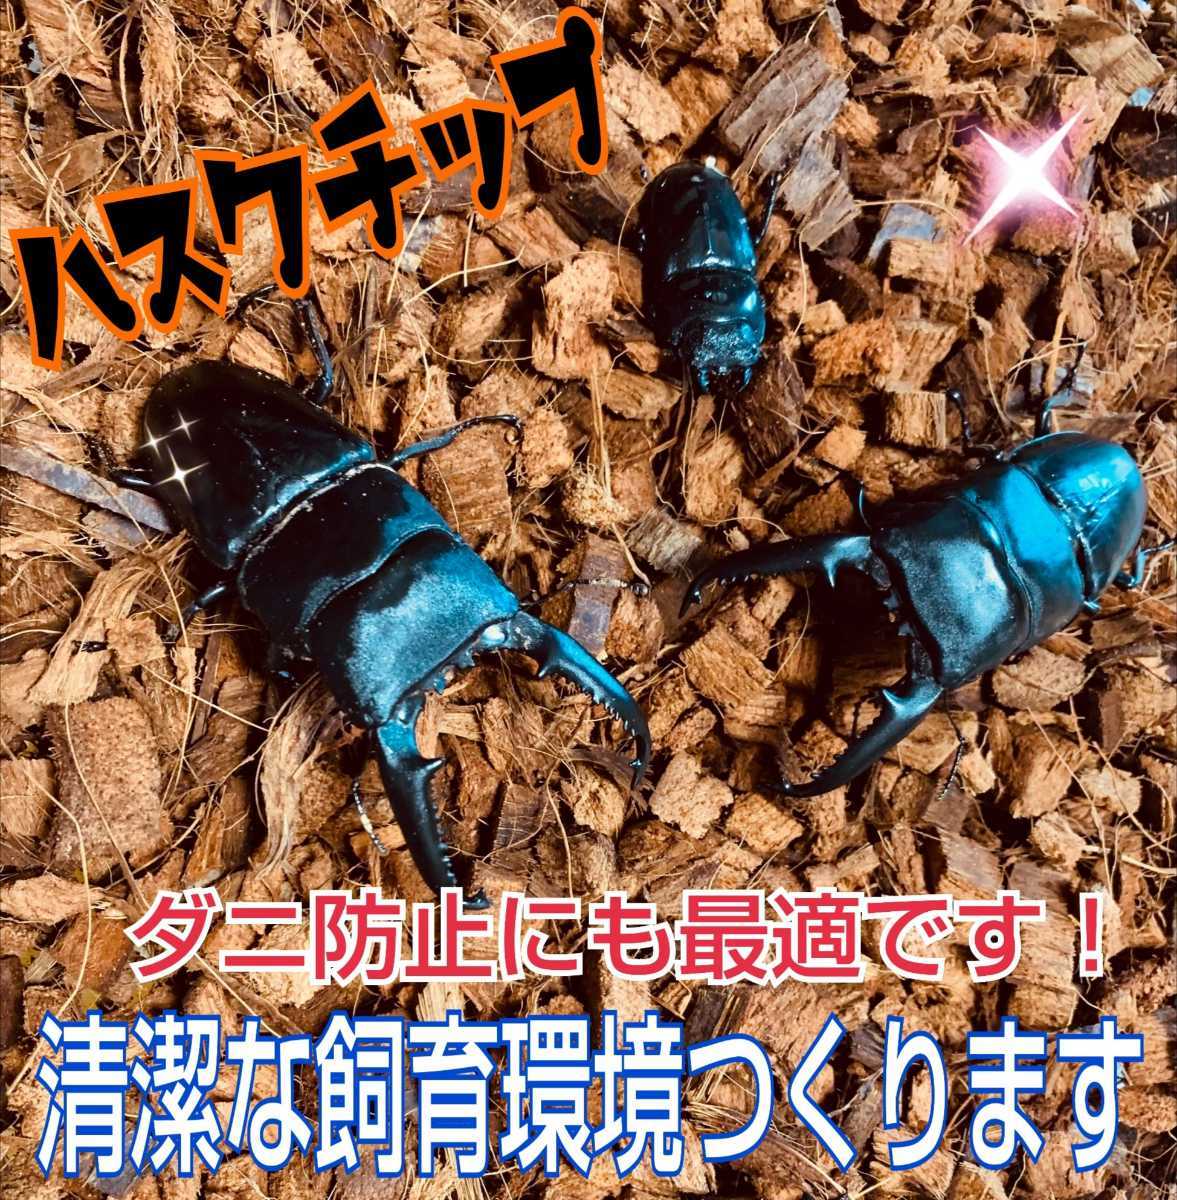 ミタニ 昆虫爬虫類用床材 ハスクチップ10リットル KM-20